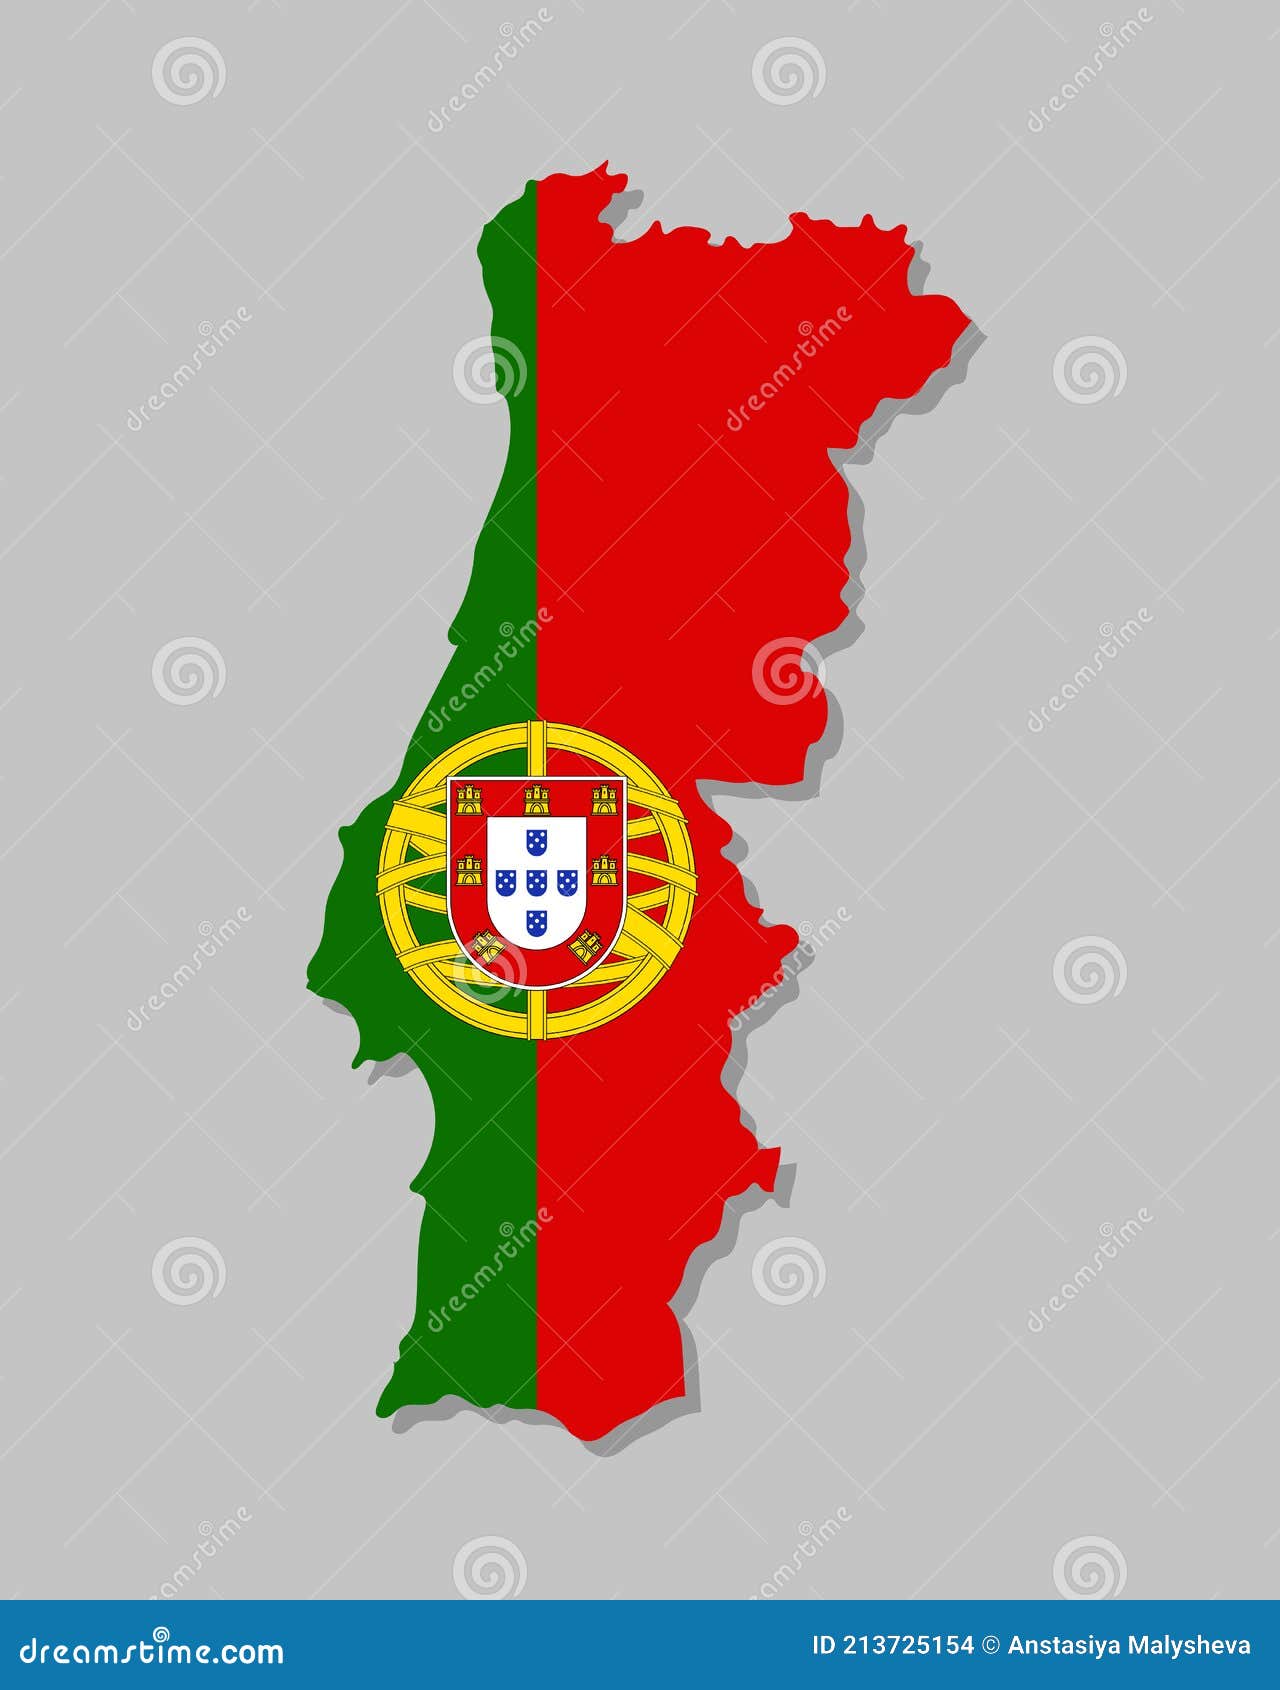 Mapa Detalhado De Portugal Com Pavilhão. Ilustração do Vetor